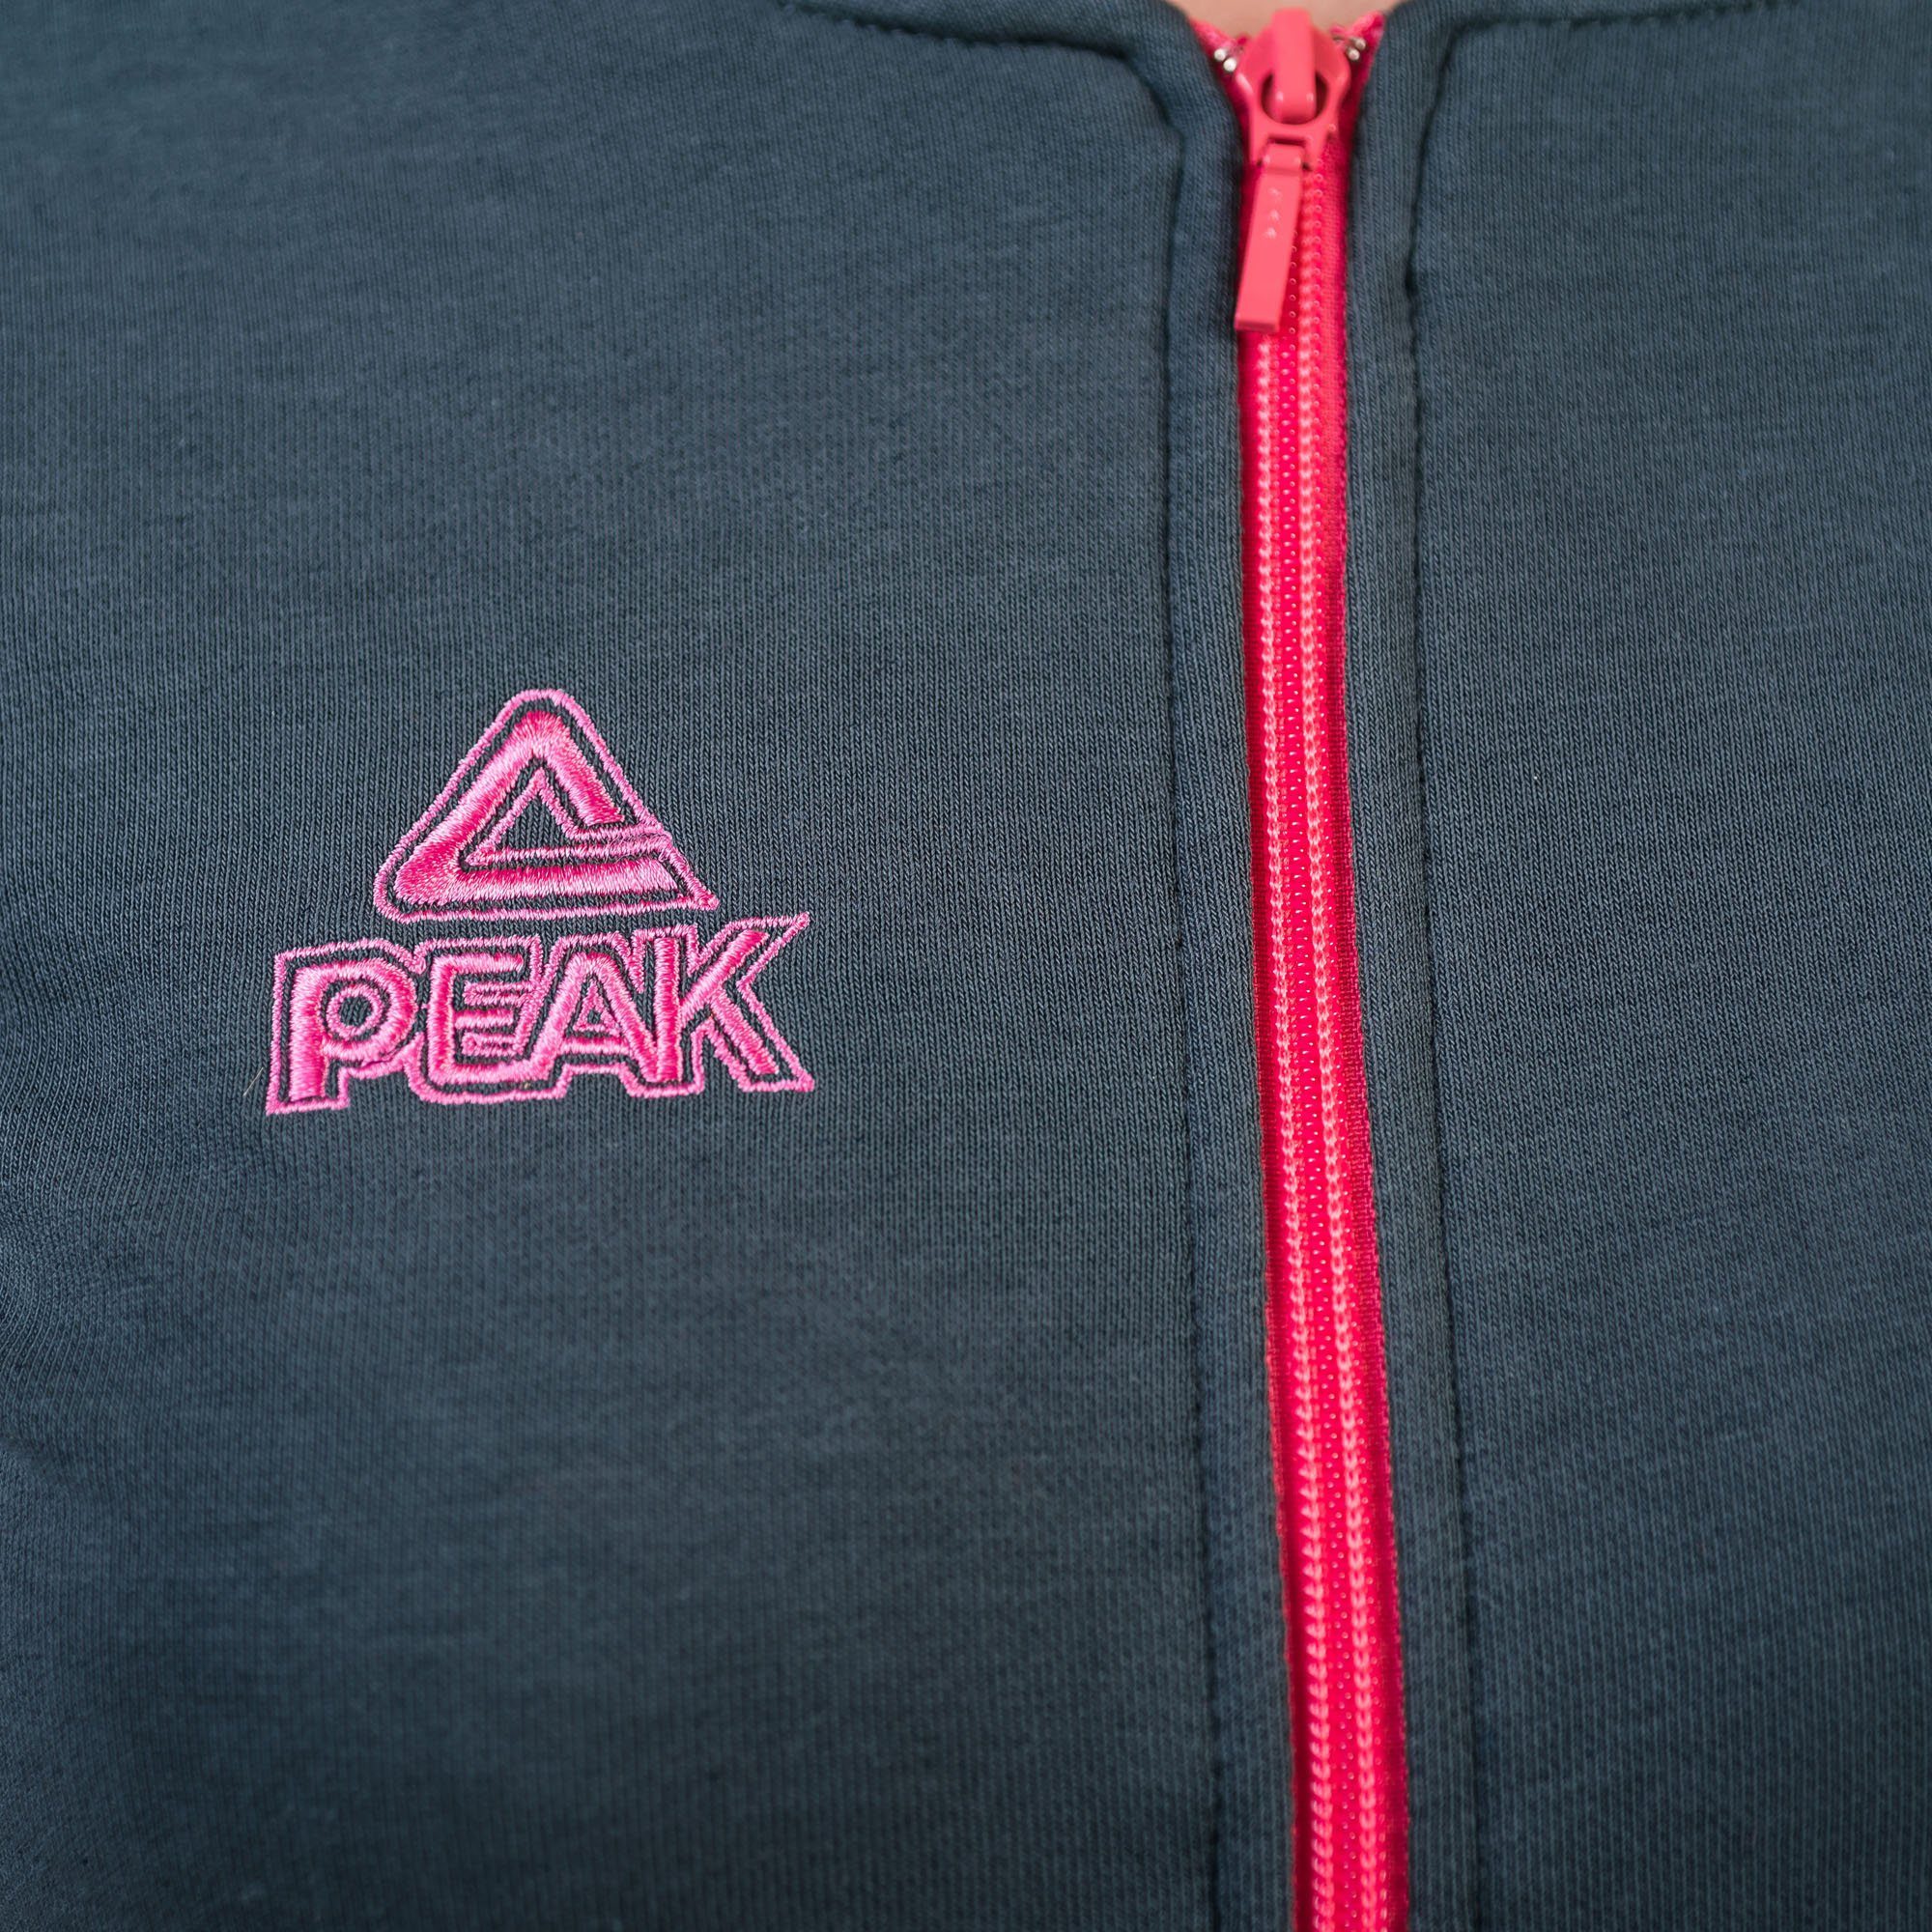 Sweatjacke pink-grau hohem classic PEAK mit Tragekomfort